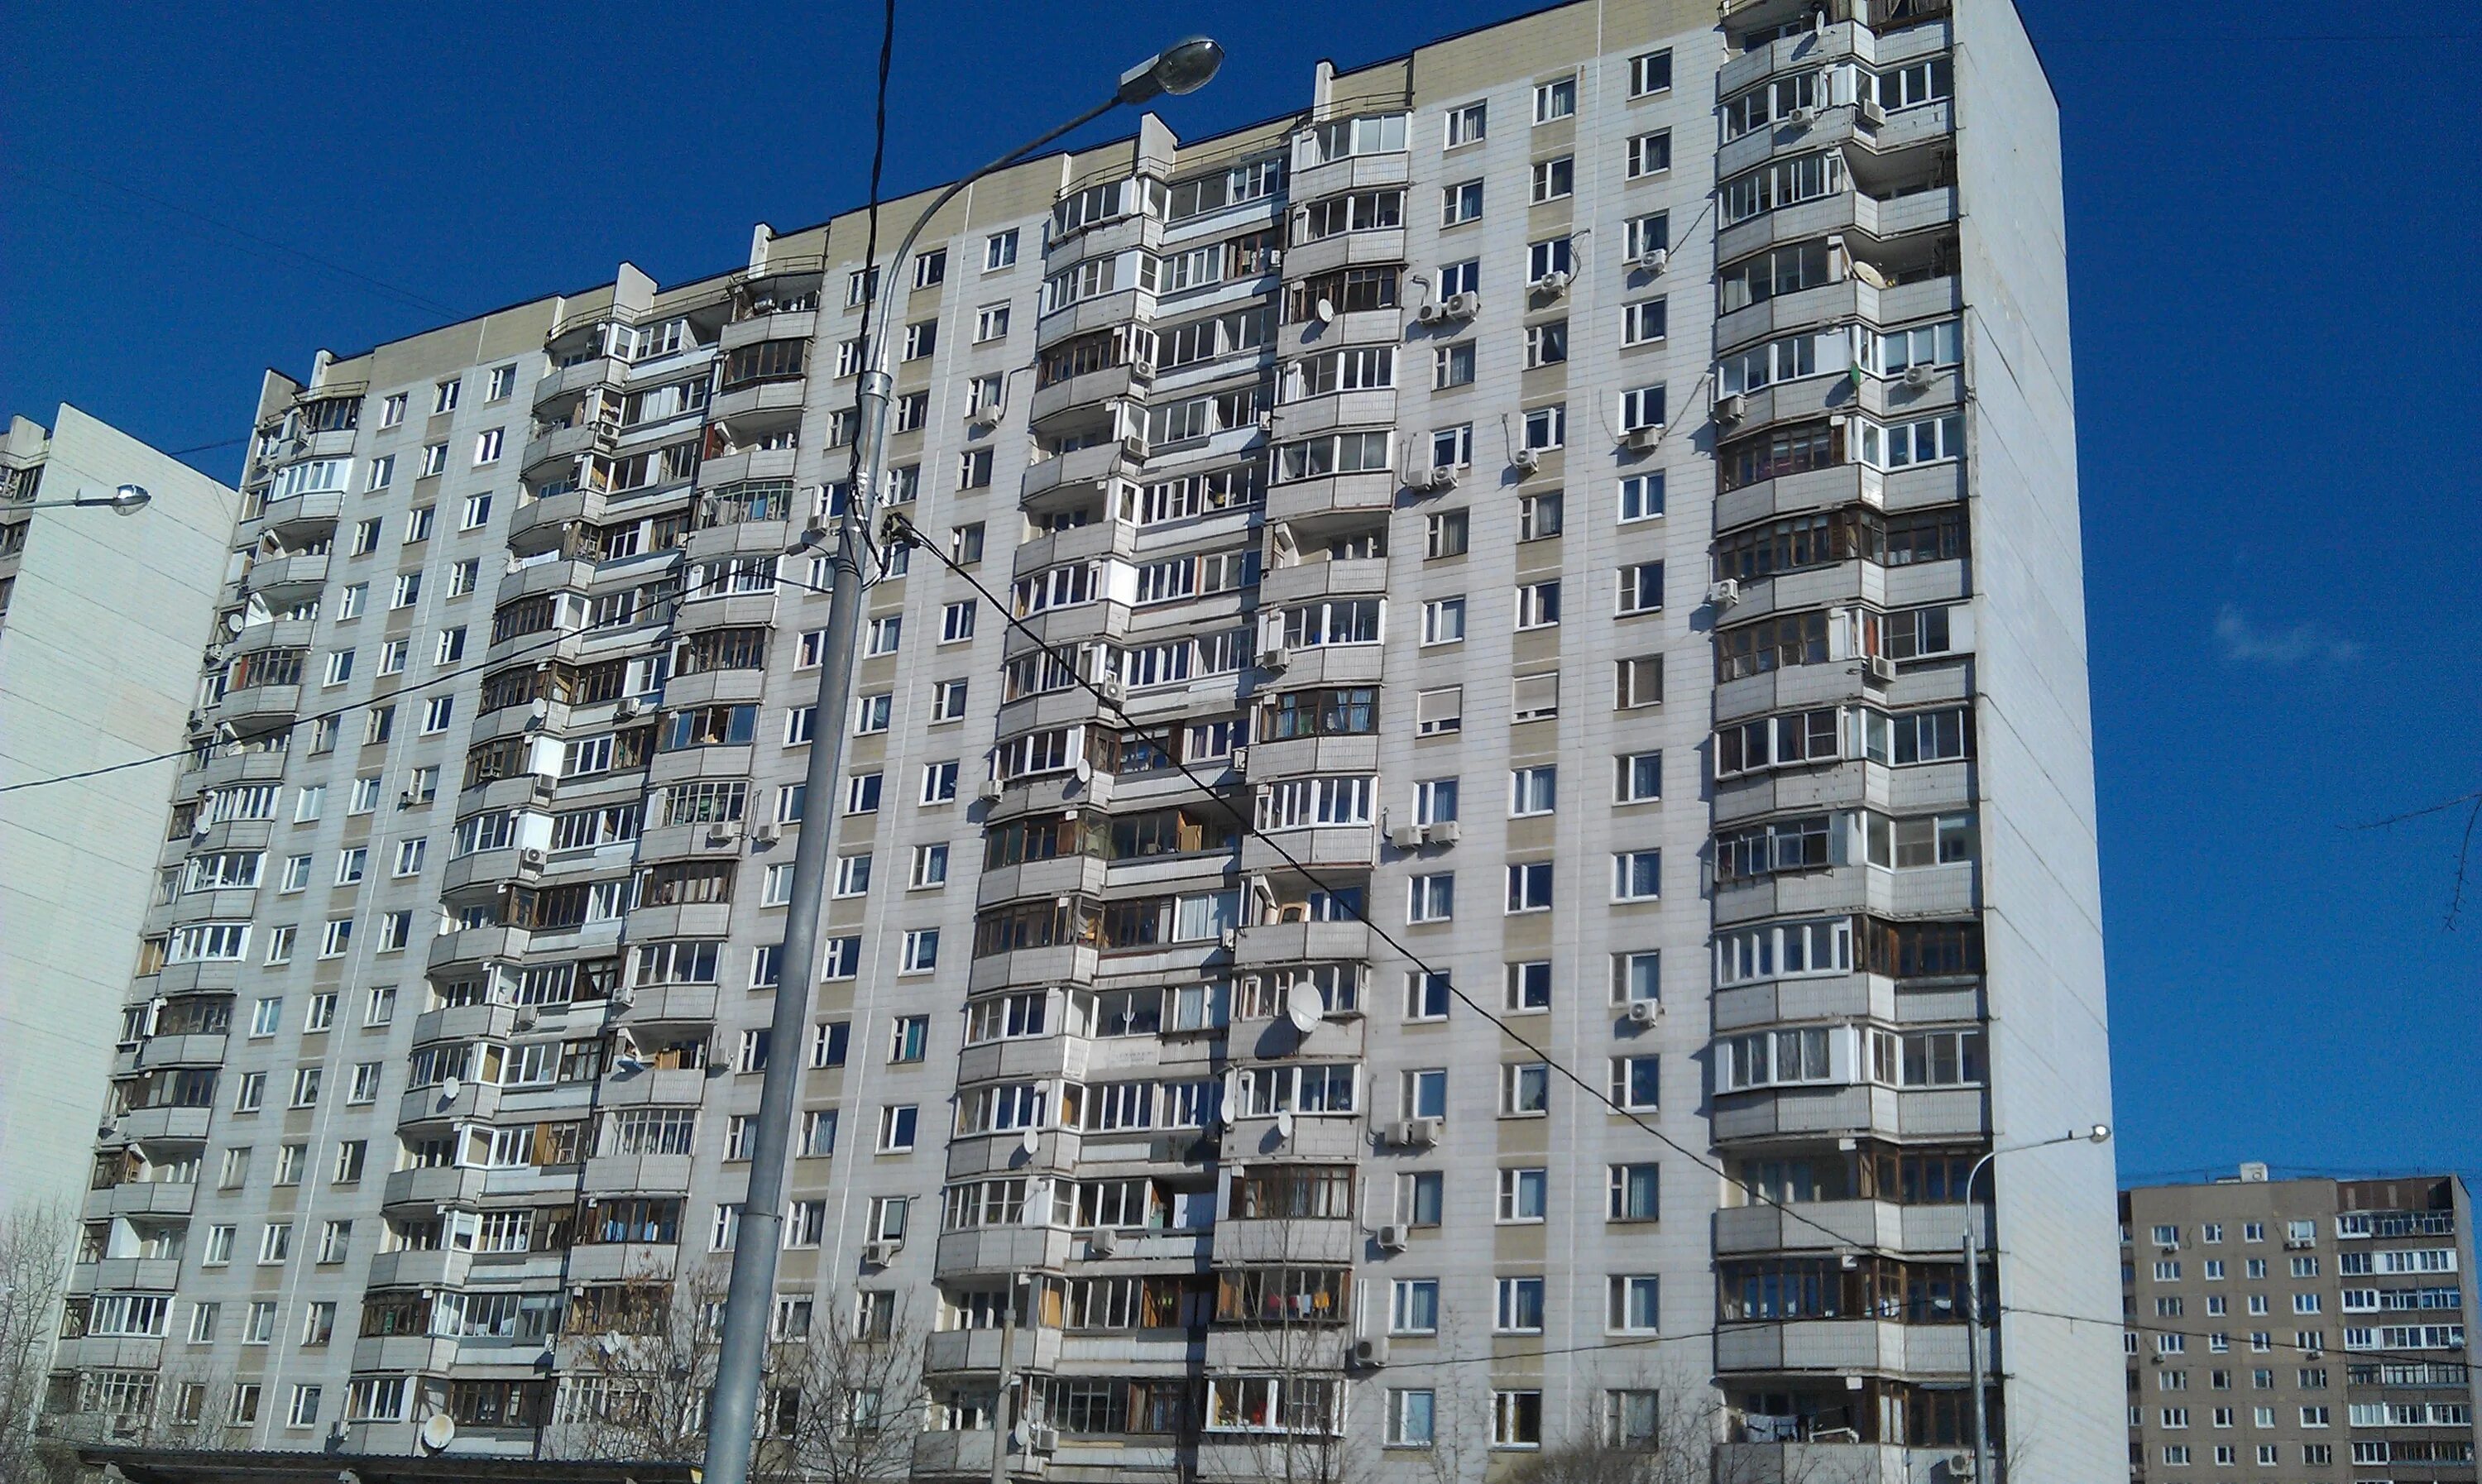 57 корпус 3. Панельный дом 1991 года постройки. Панельный дом п-44 СССР. Керамический 57 корп 3. Панельный дом 1982 года постройки.